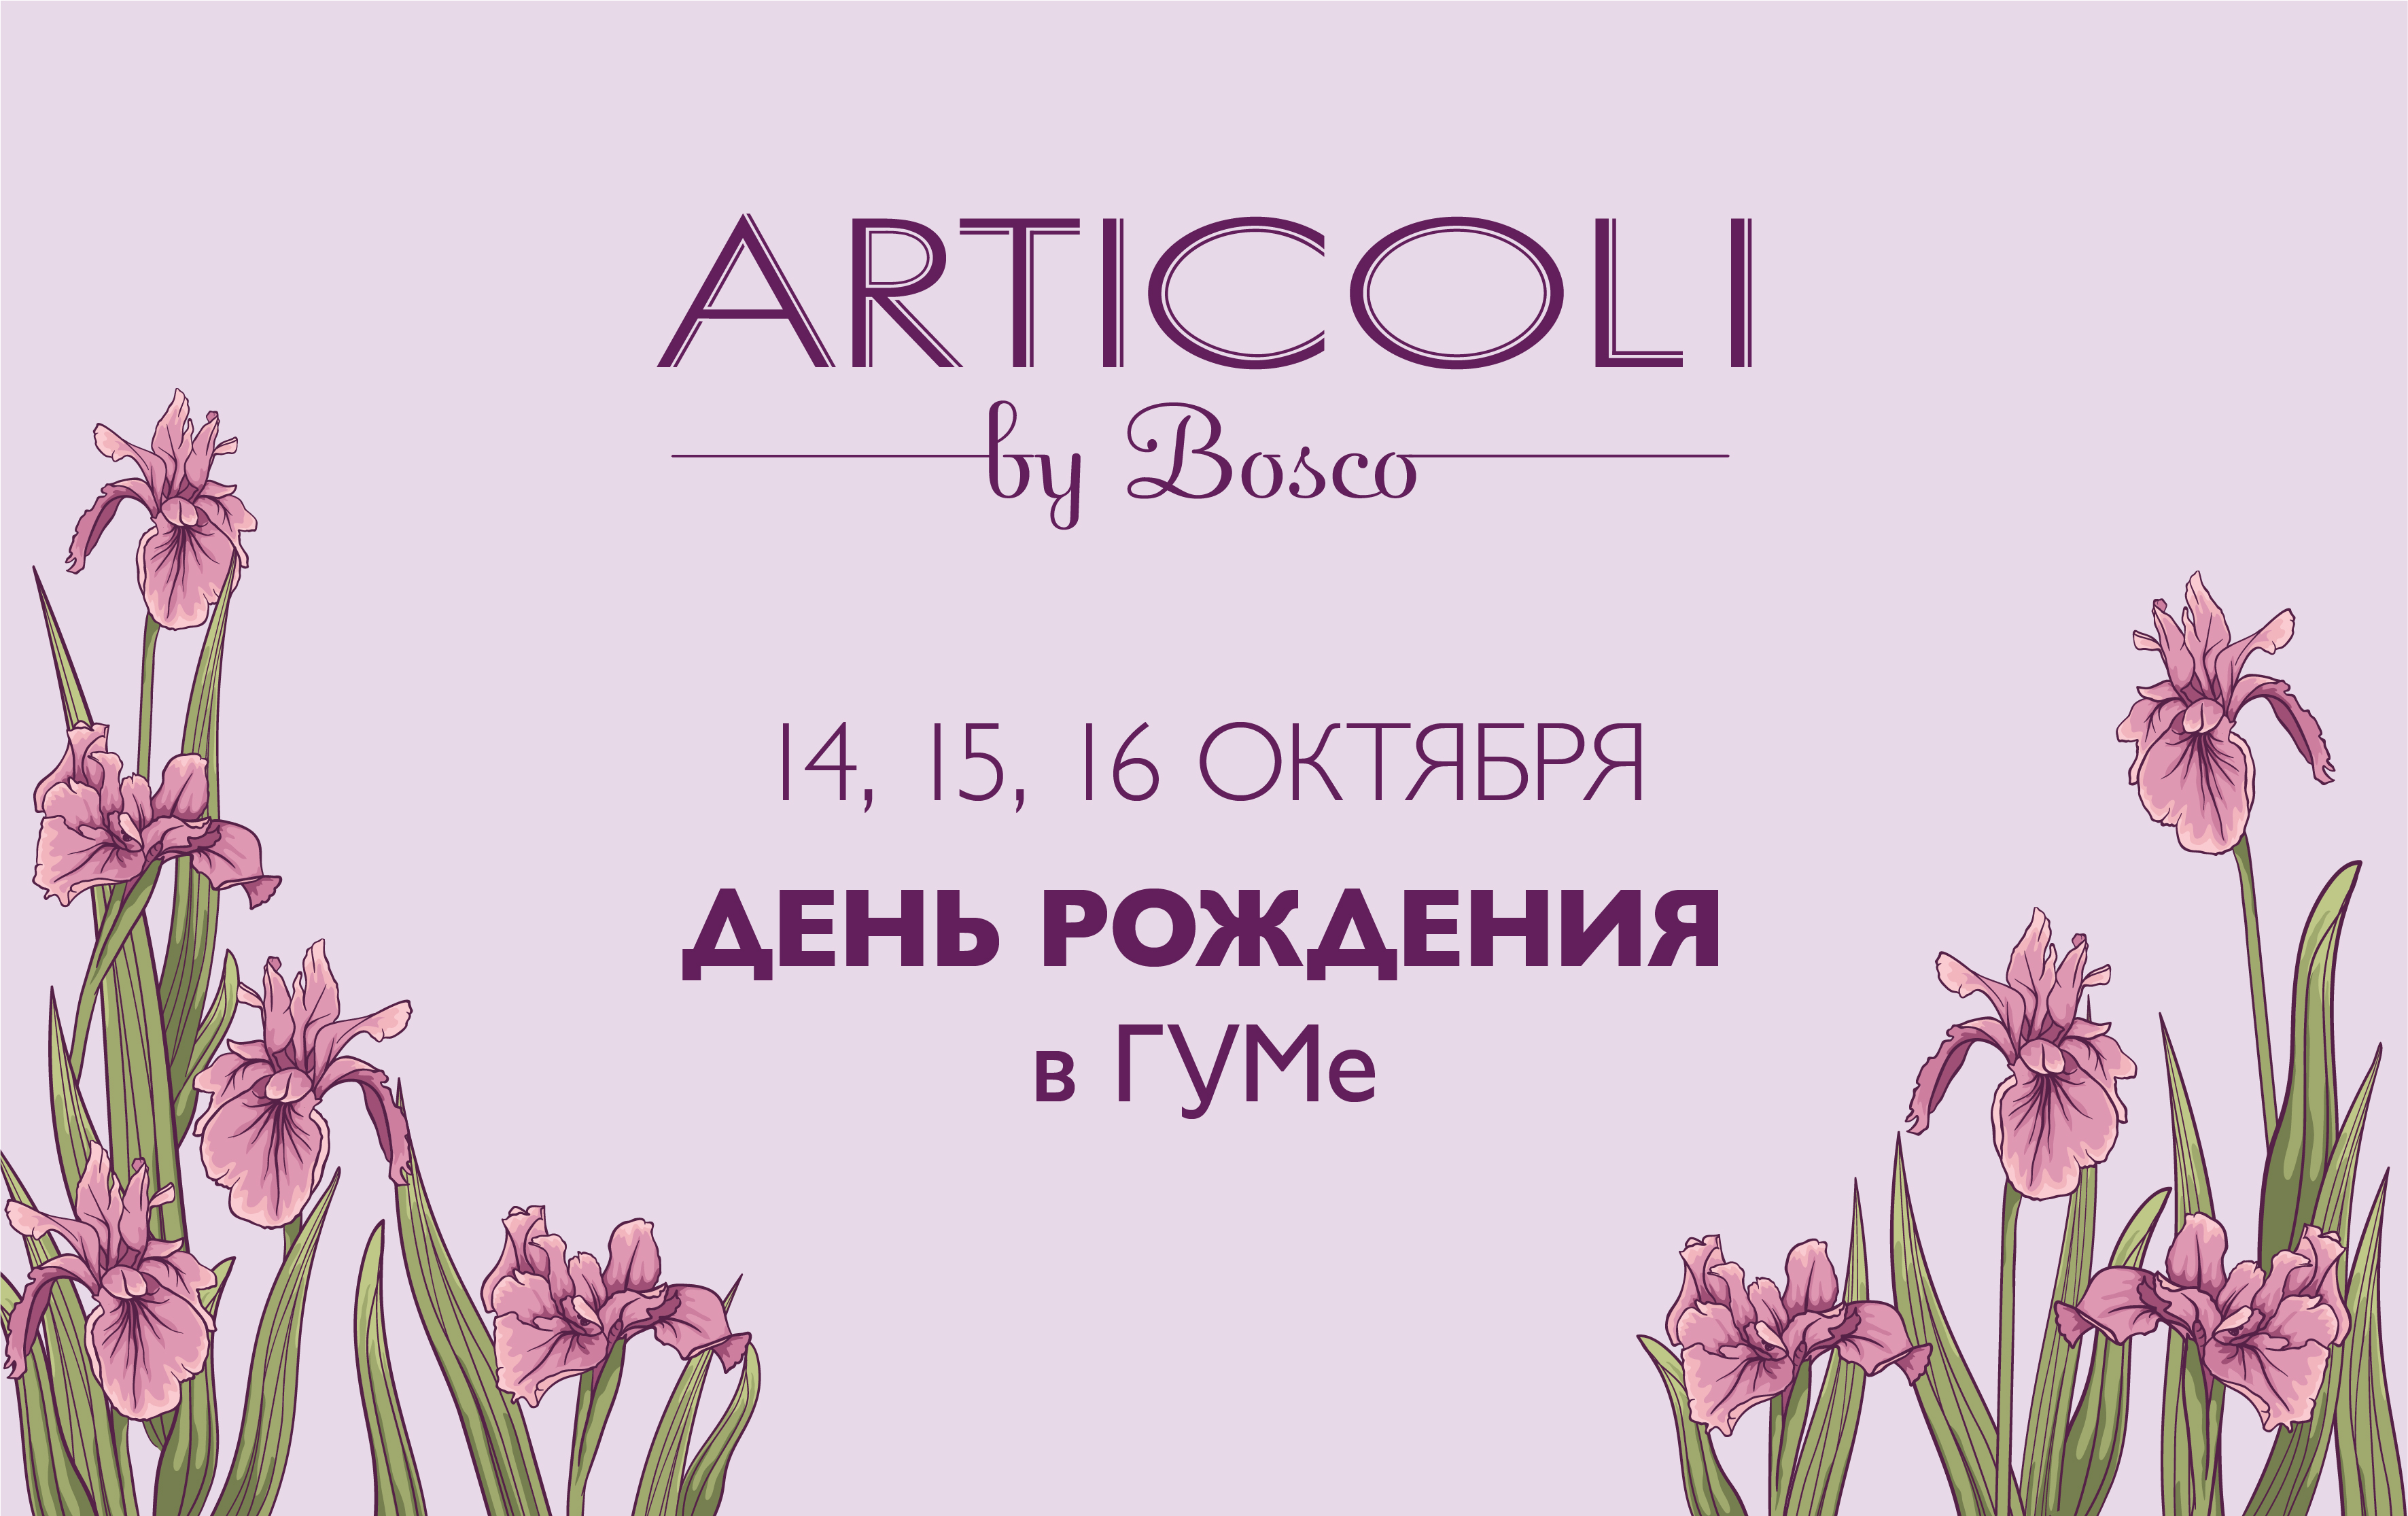 День Рождения Articoli by Bosco в ГУМе!